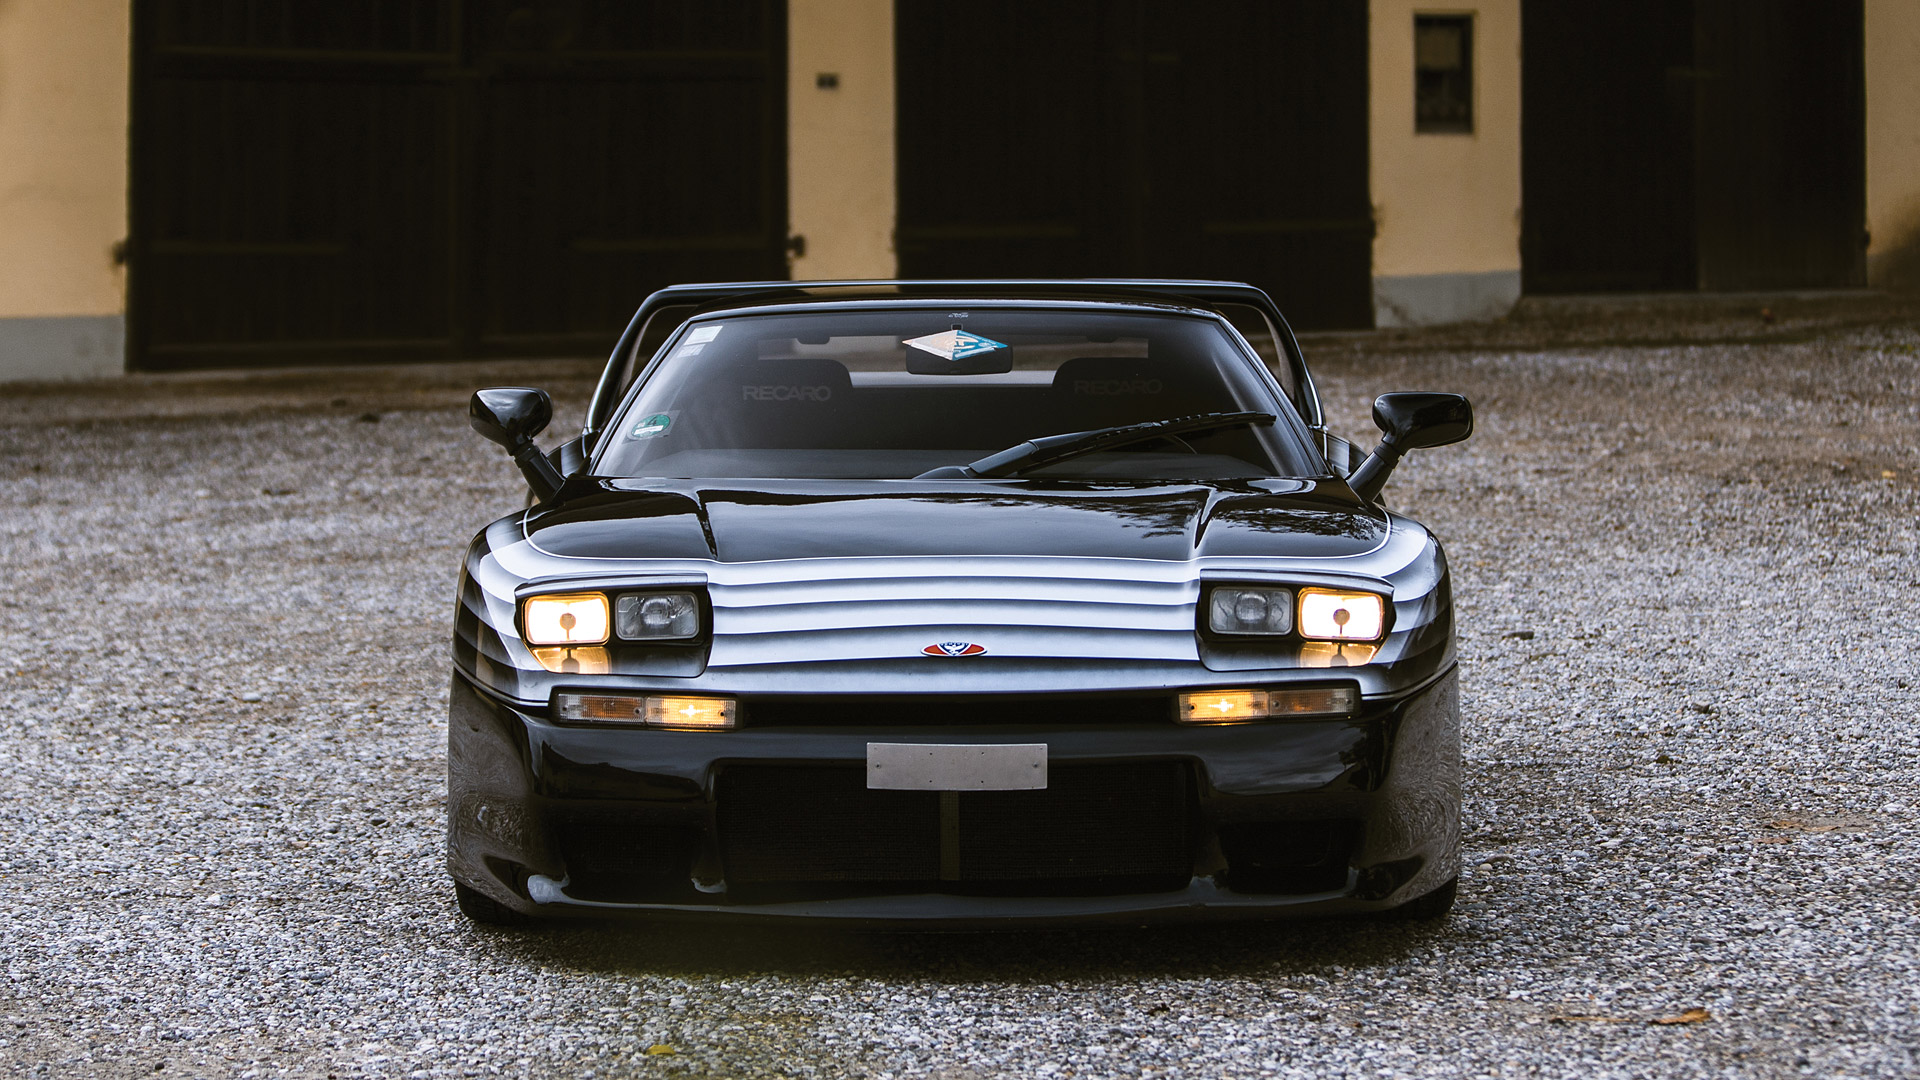  1994 Venturi 400 GT Wallpaper.